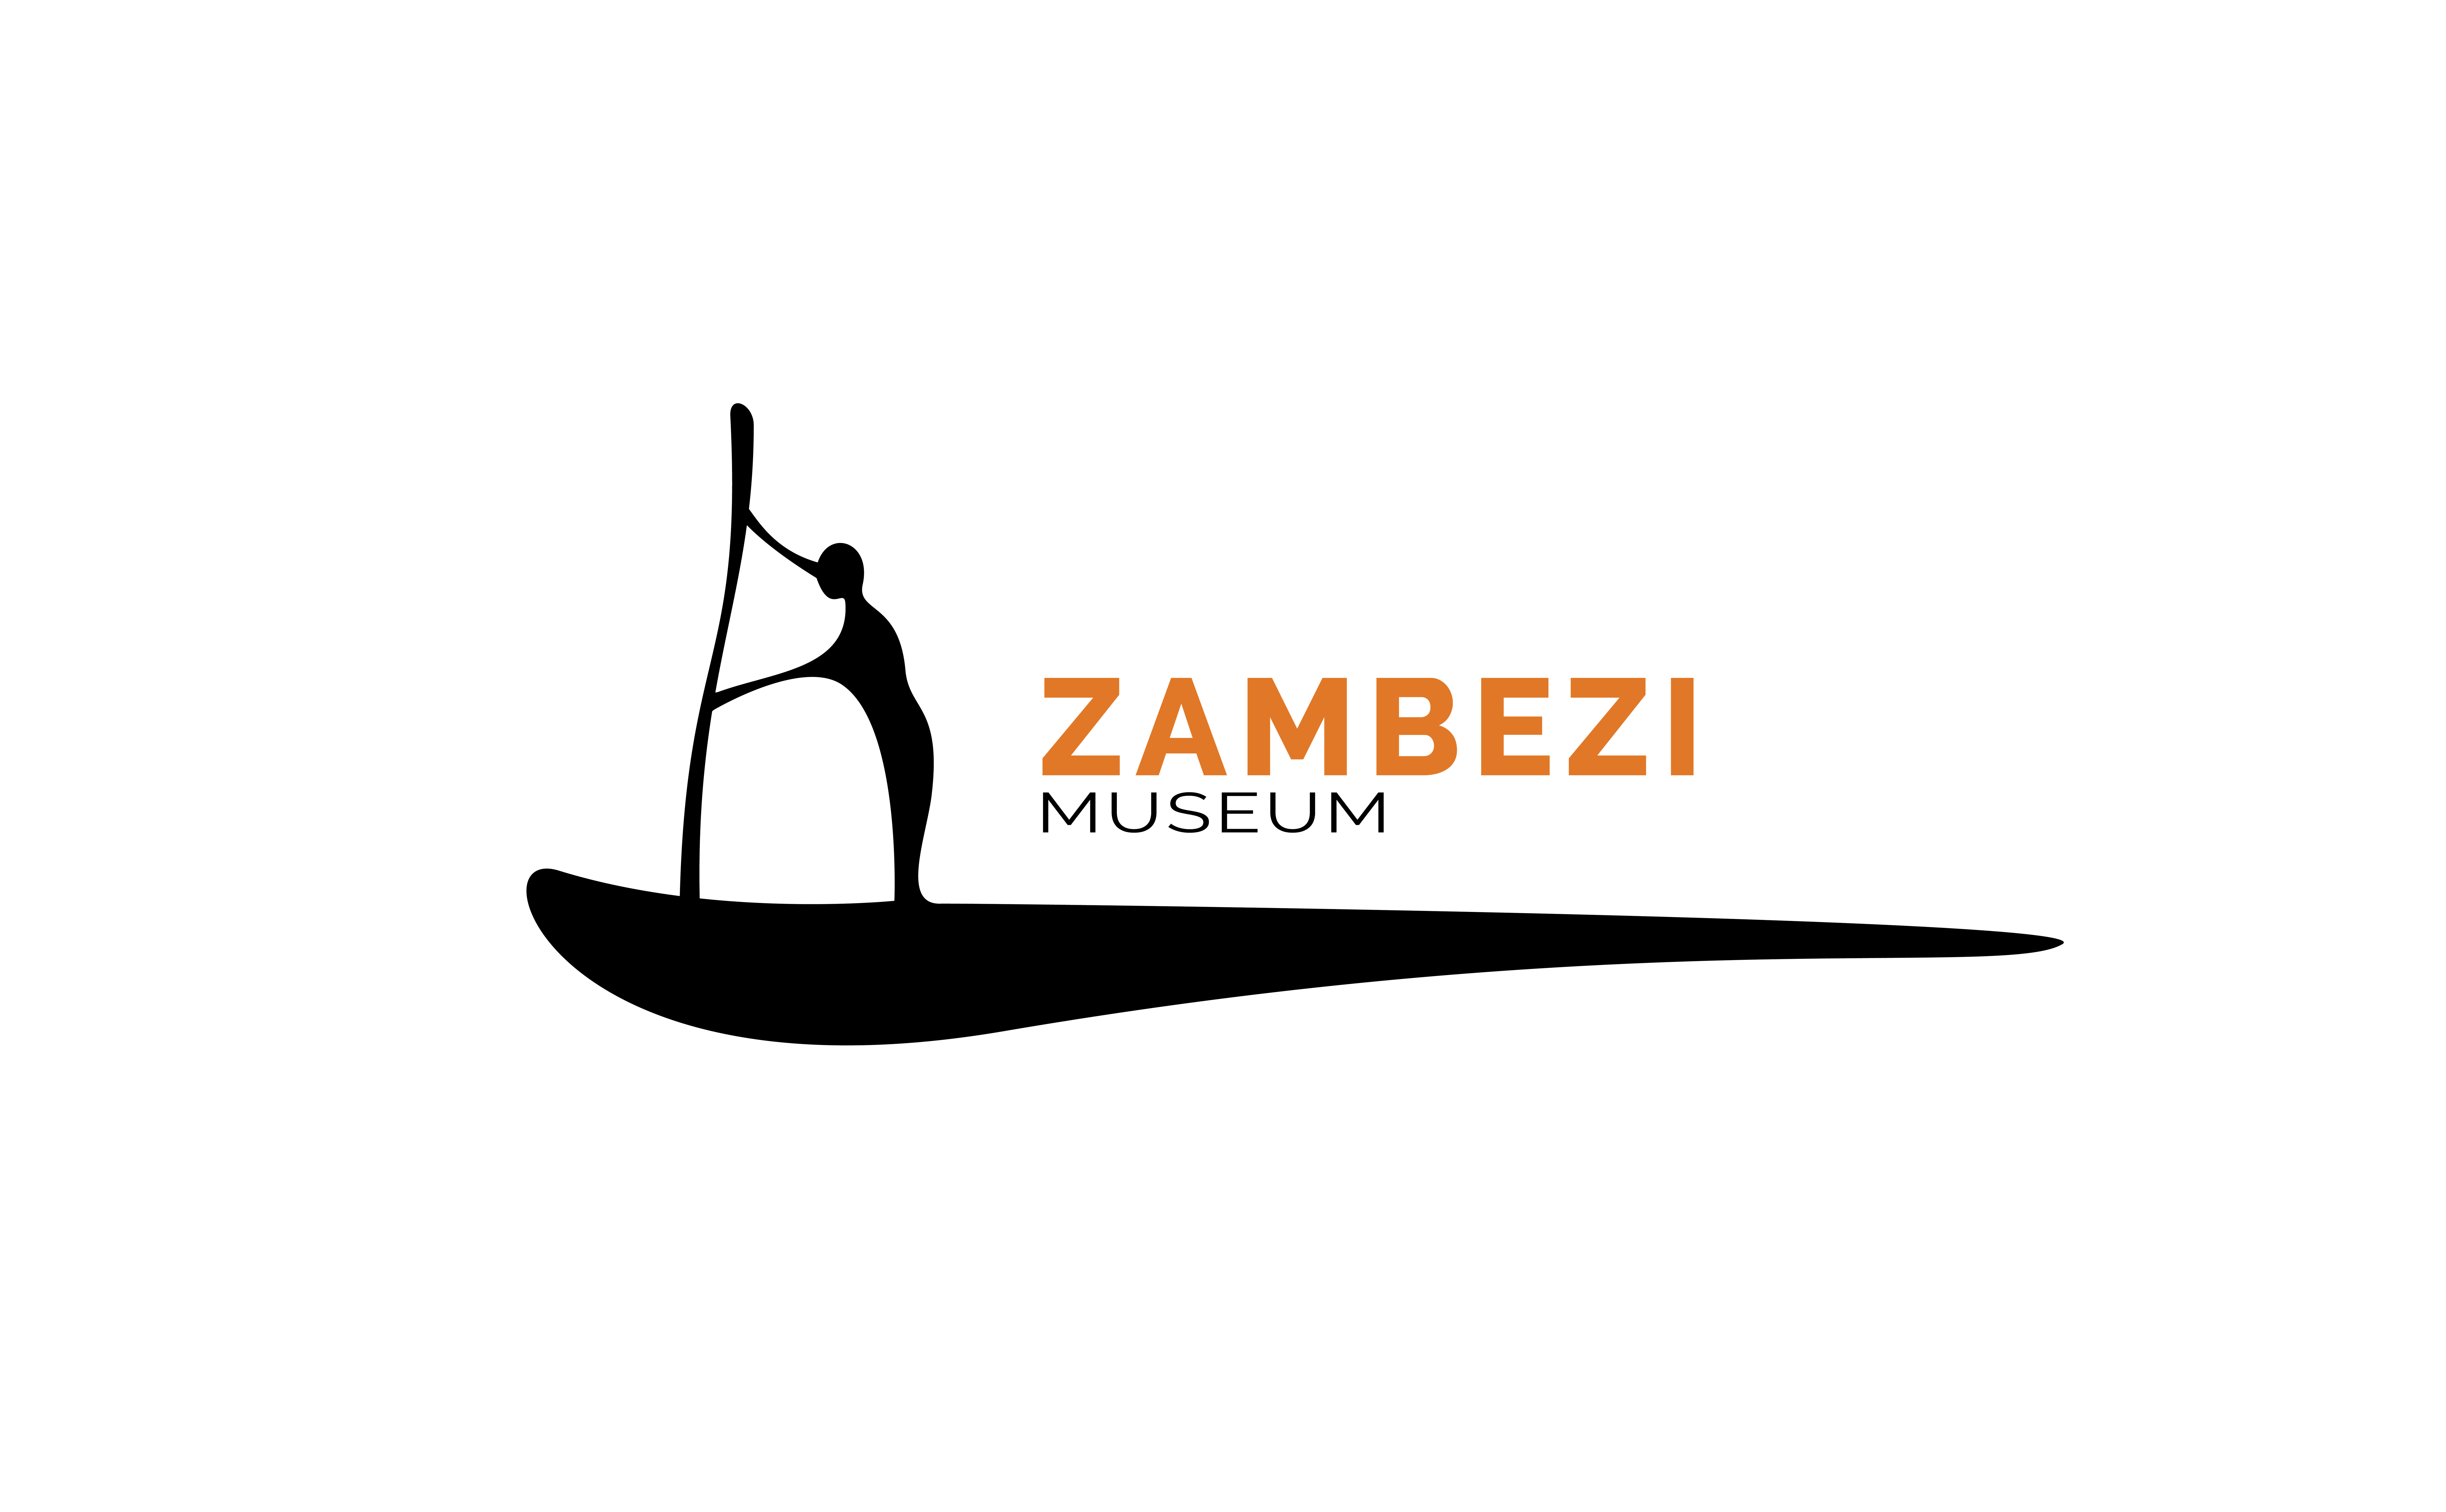 Zambezi Museum